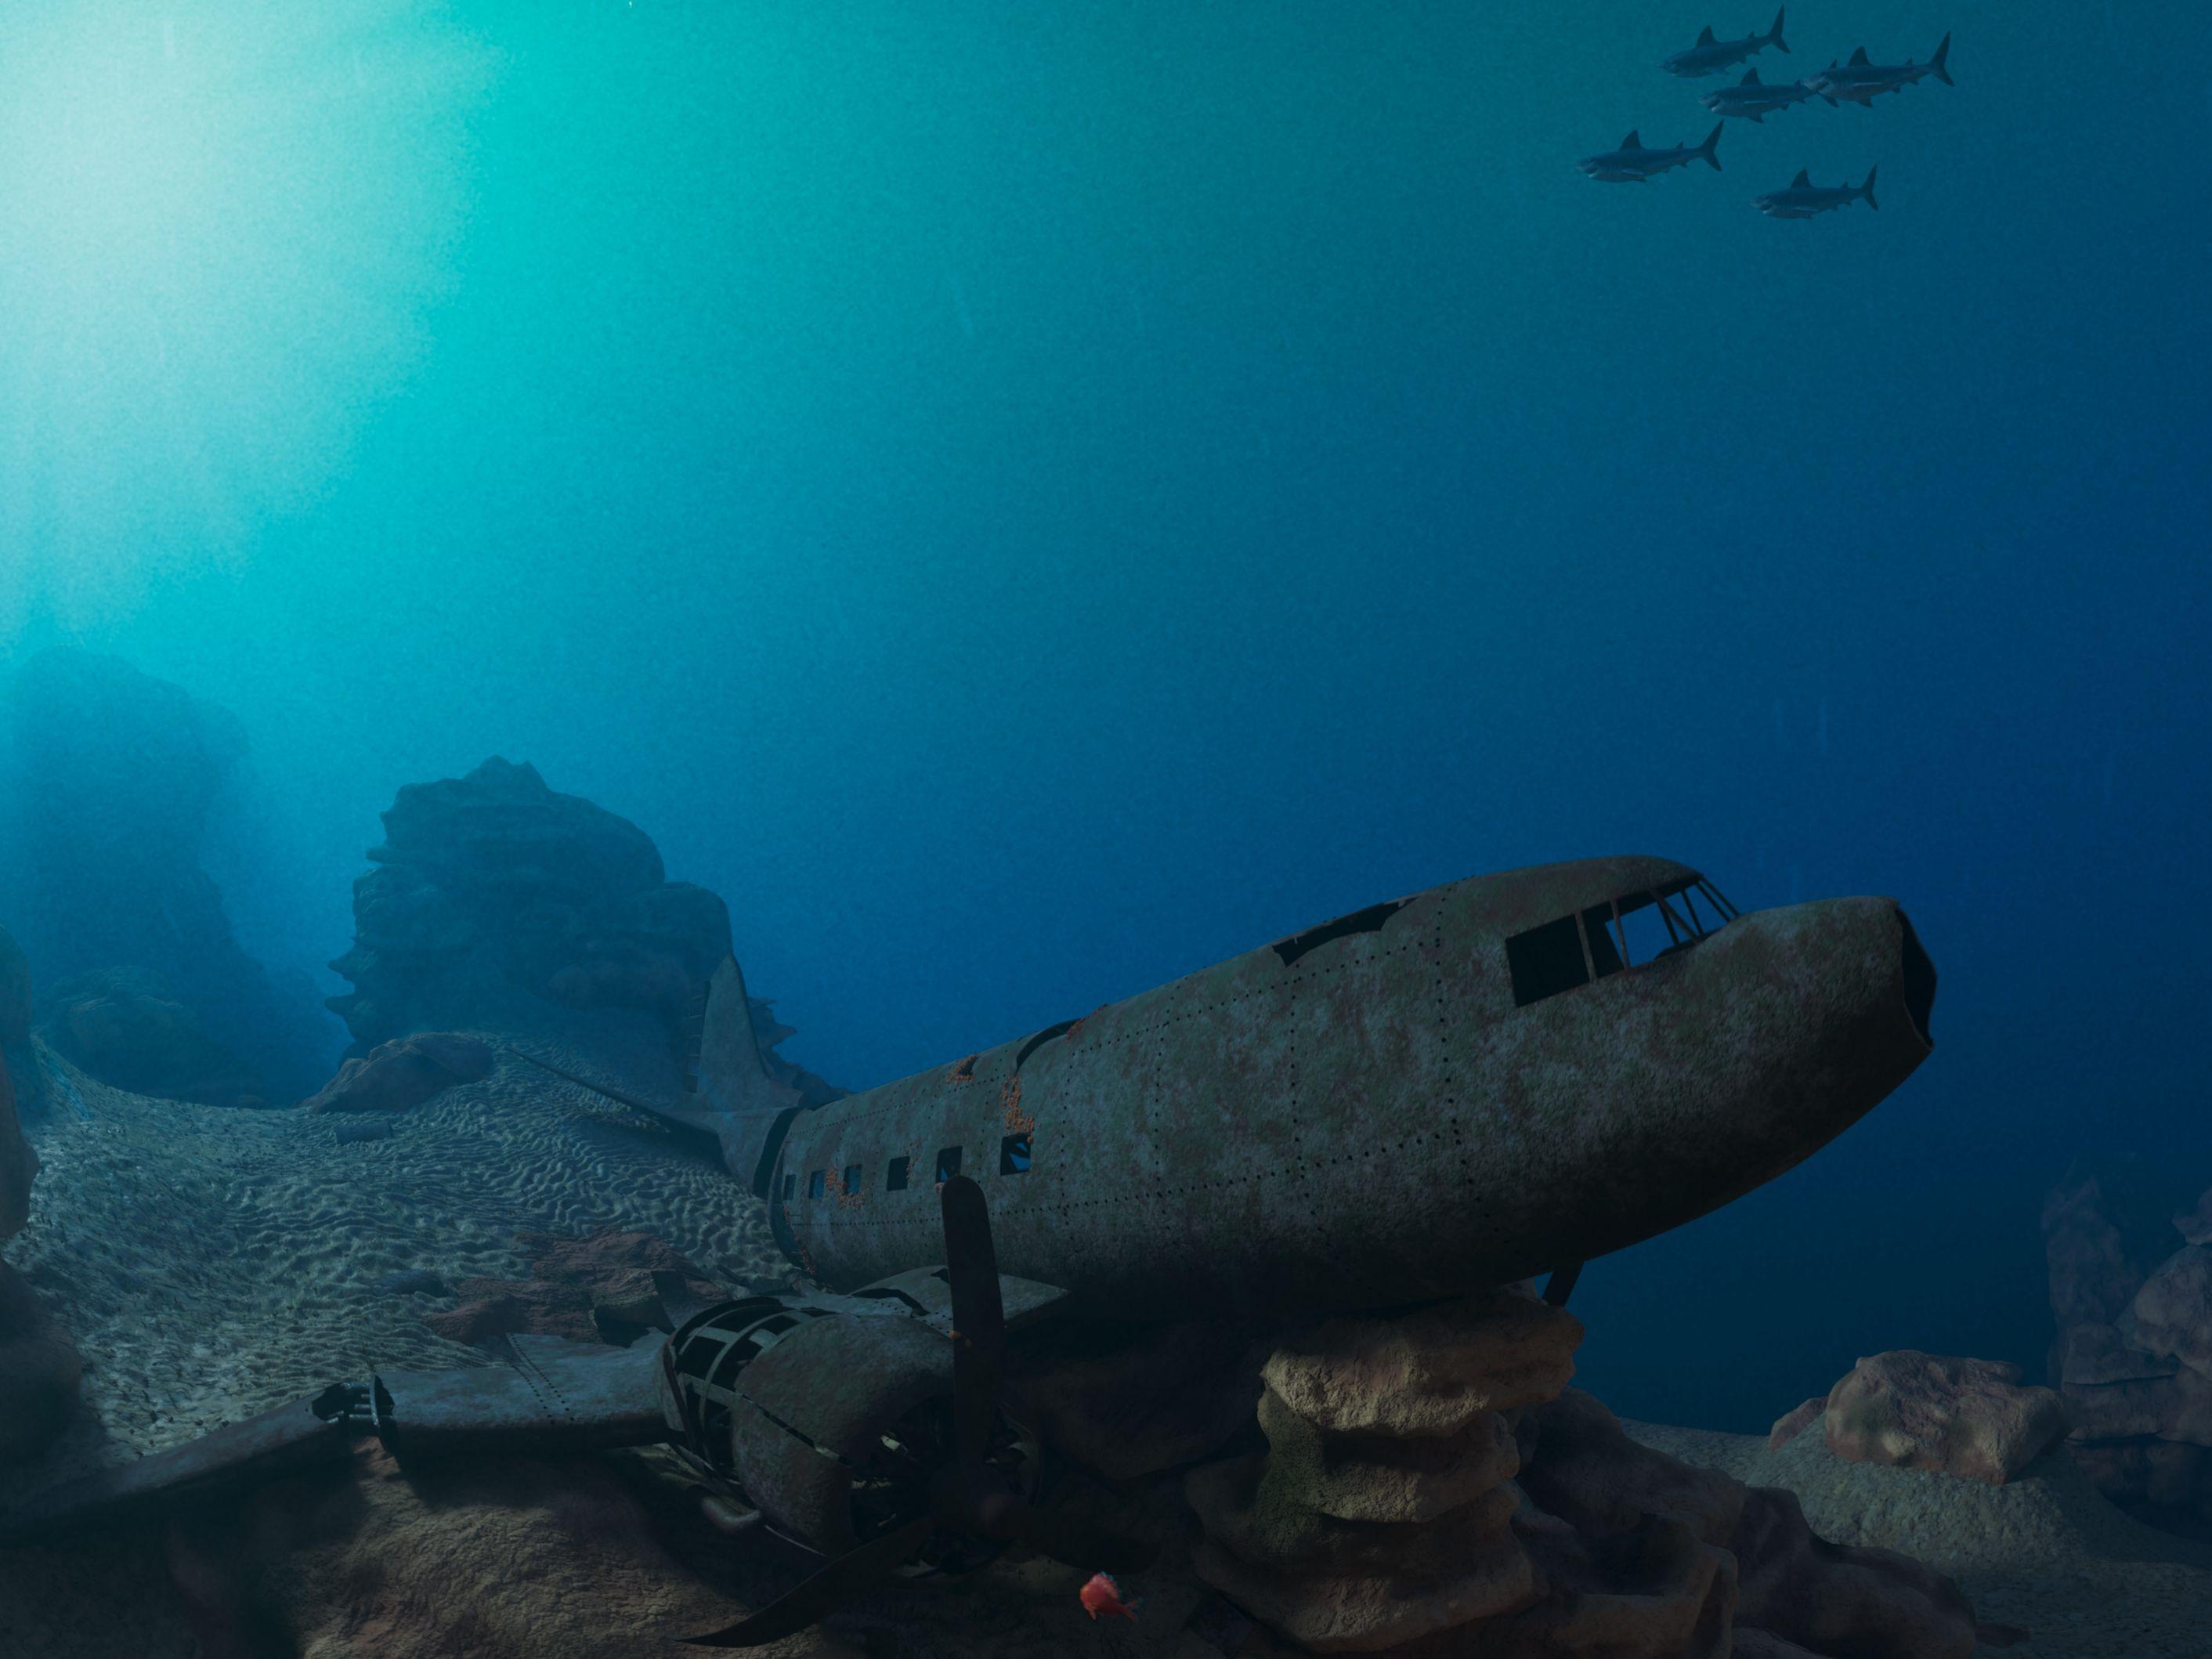 香港太空館天象廳十月一日（星期日）起放映全新立體球幕電影《珊瑚礁冒險隊3D》，帶領觀眾探索海底世界。圖示一架沉入海底成為海洋生物避難所的飛機殘骸。（圖片來源：SOFTMACHINE）